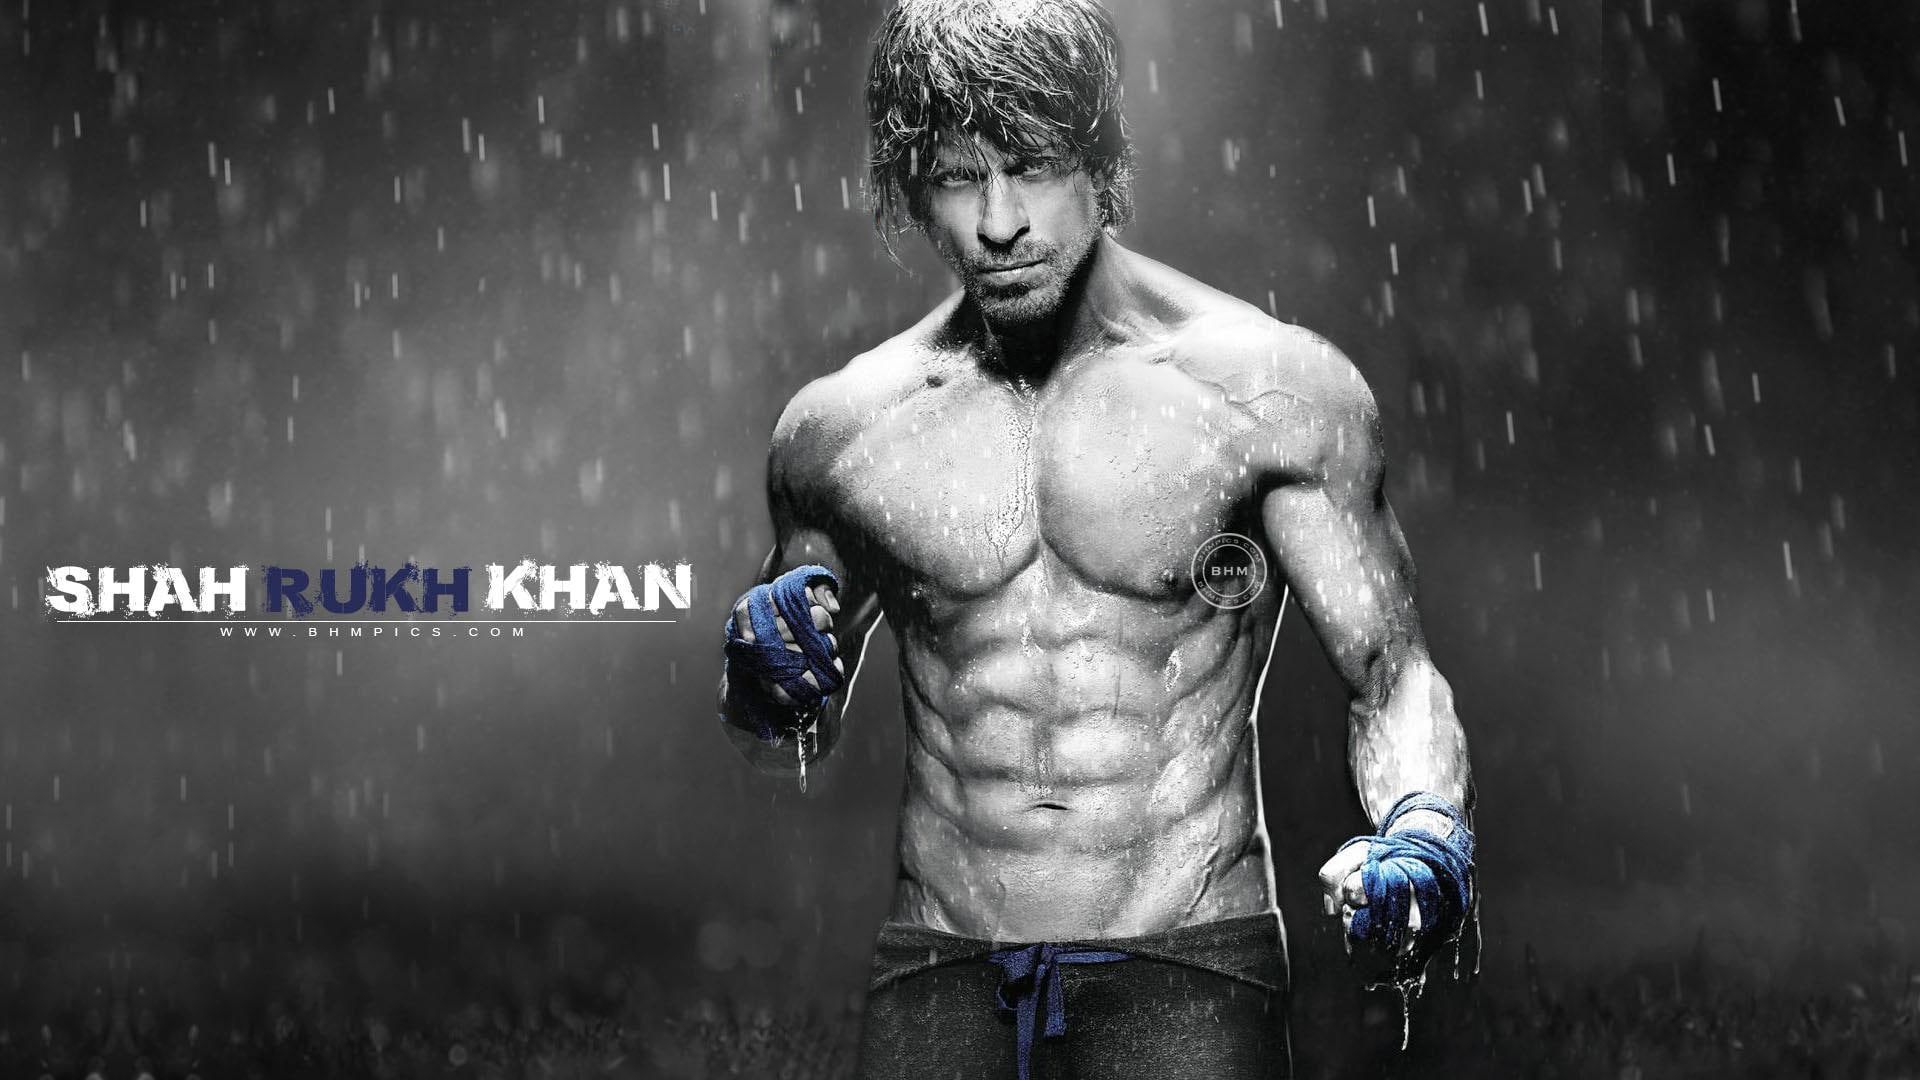 Shah Rukh Khan Eight Pack Abs, male celebrities, shahrukh khan